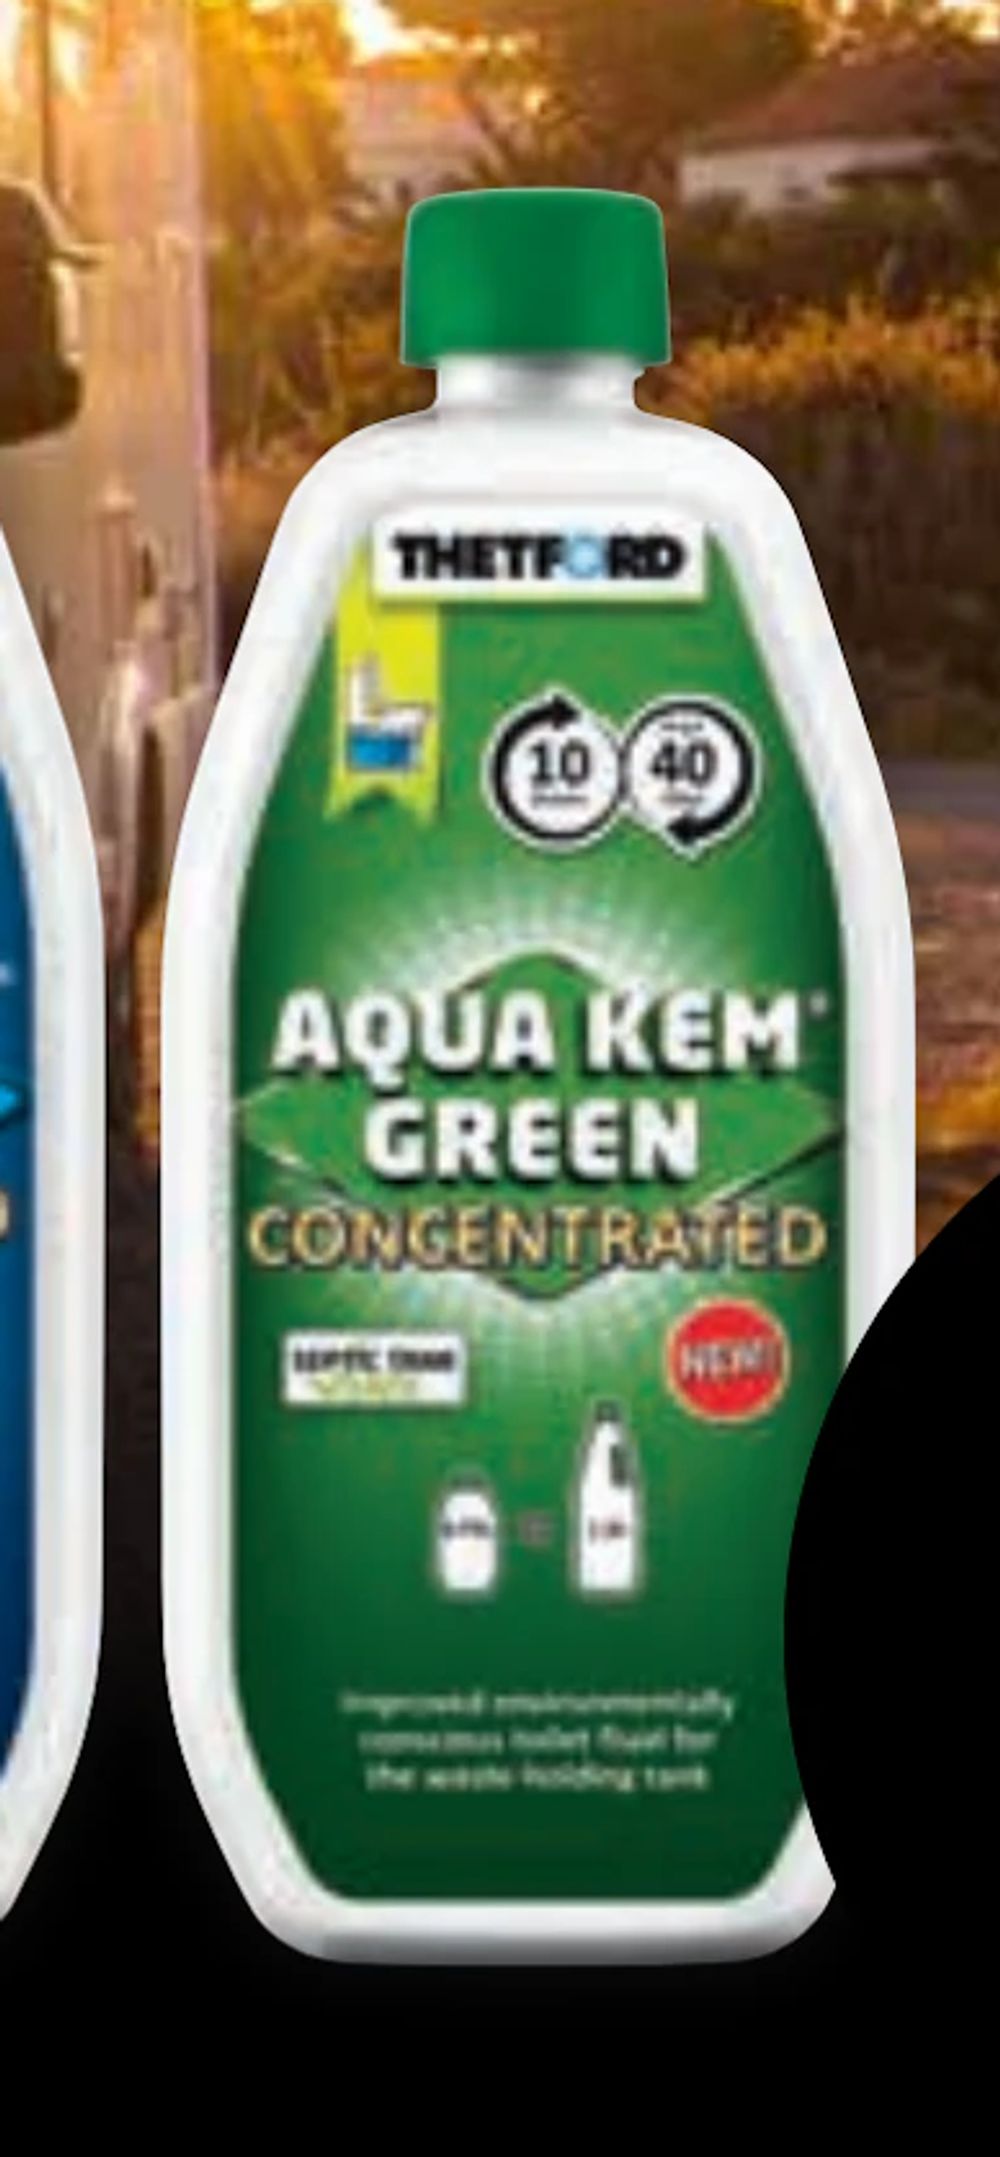 Tilbud på Aqua Kem Green-koncentrat fra CITTI til 119,99 kr.